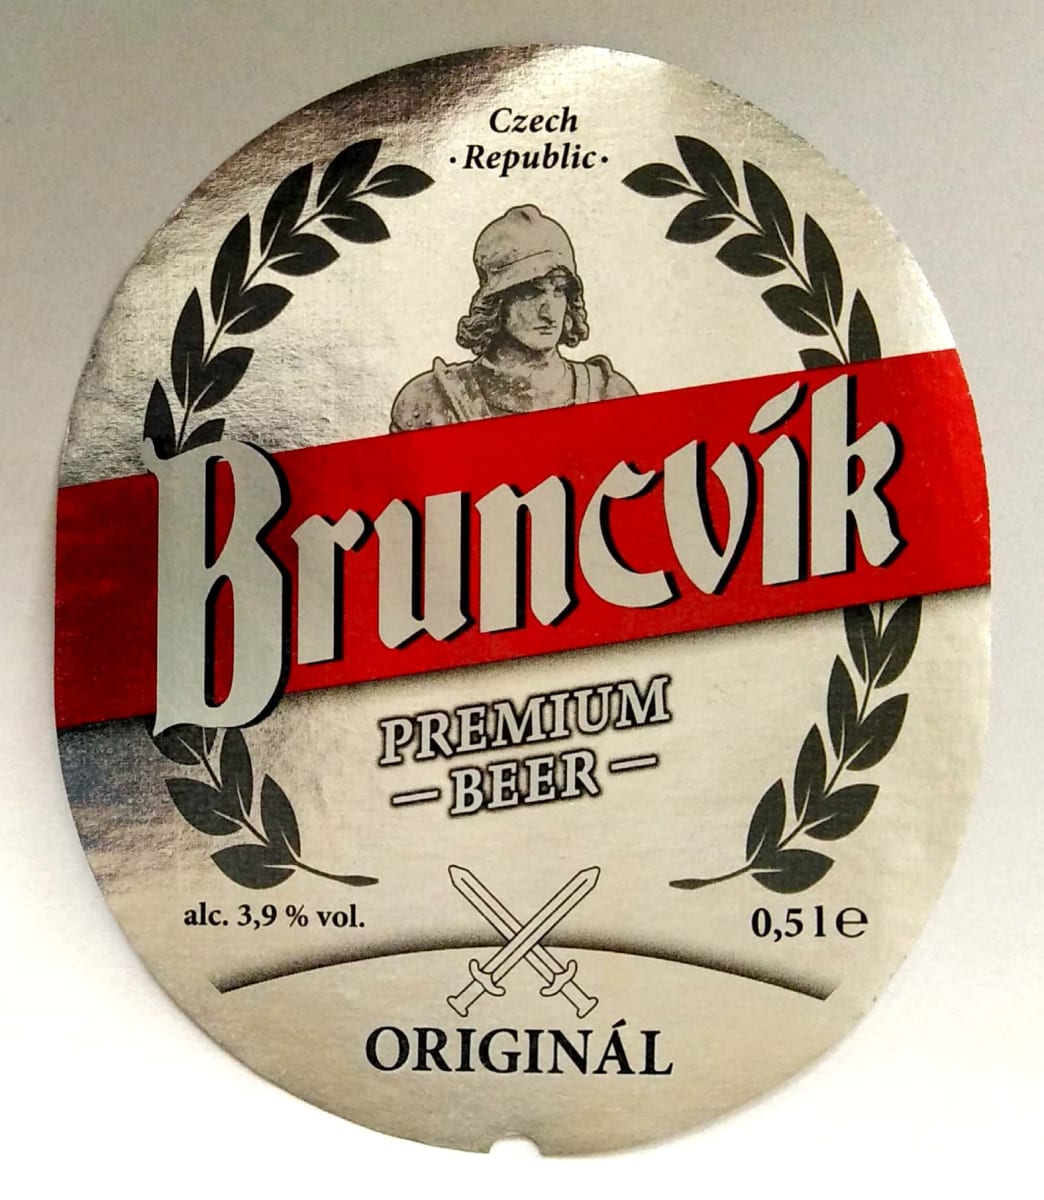 Bruncvík Premium beer Originál